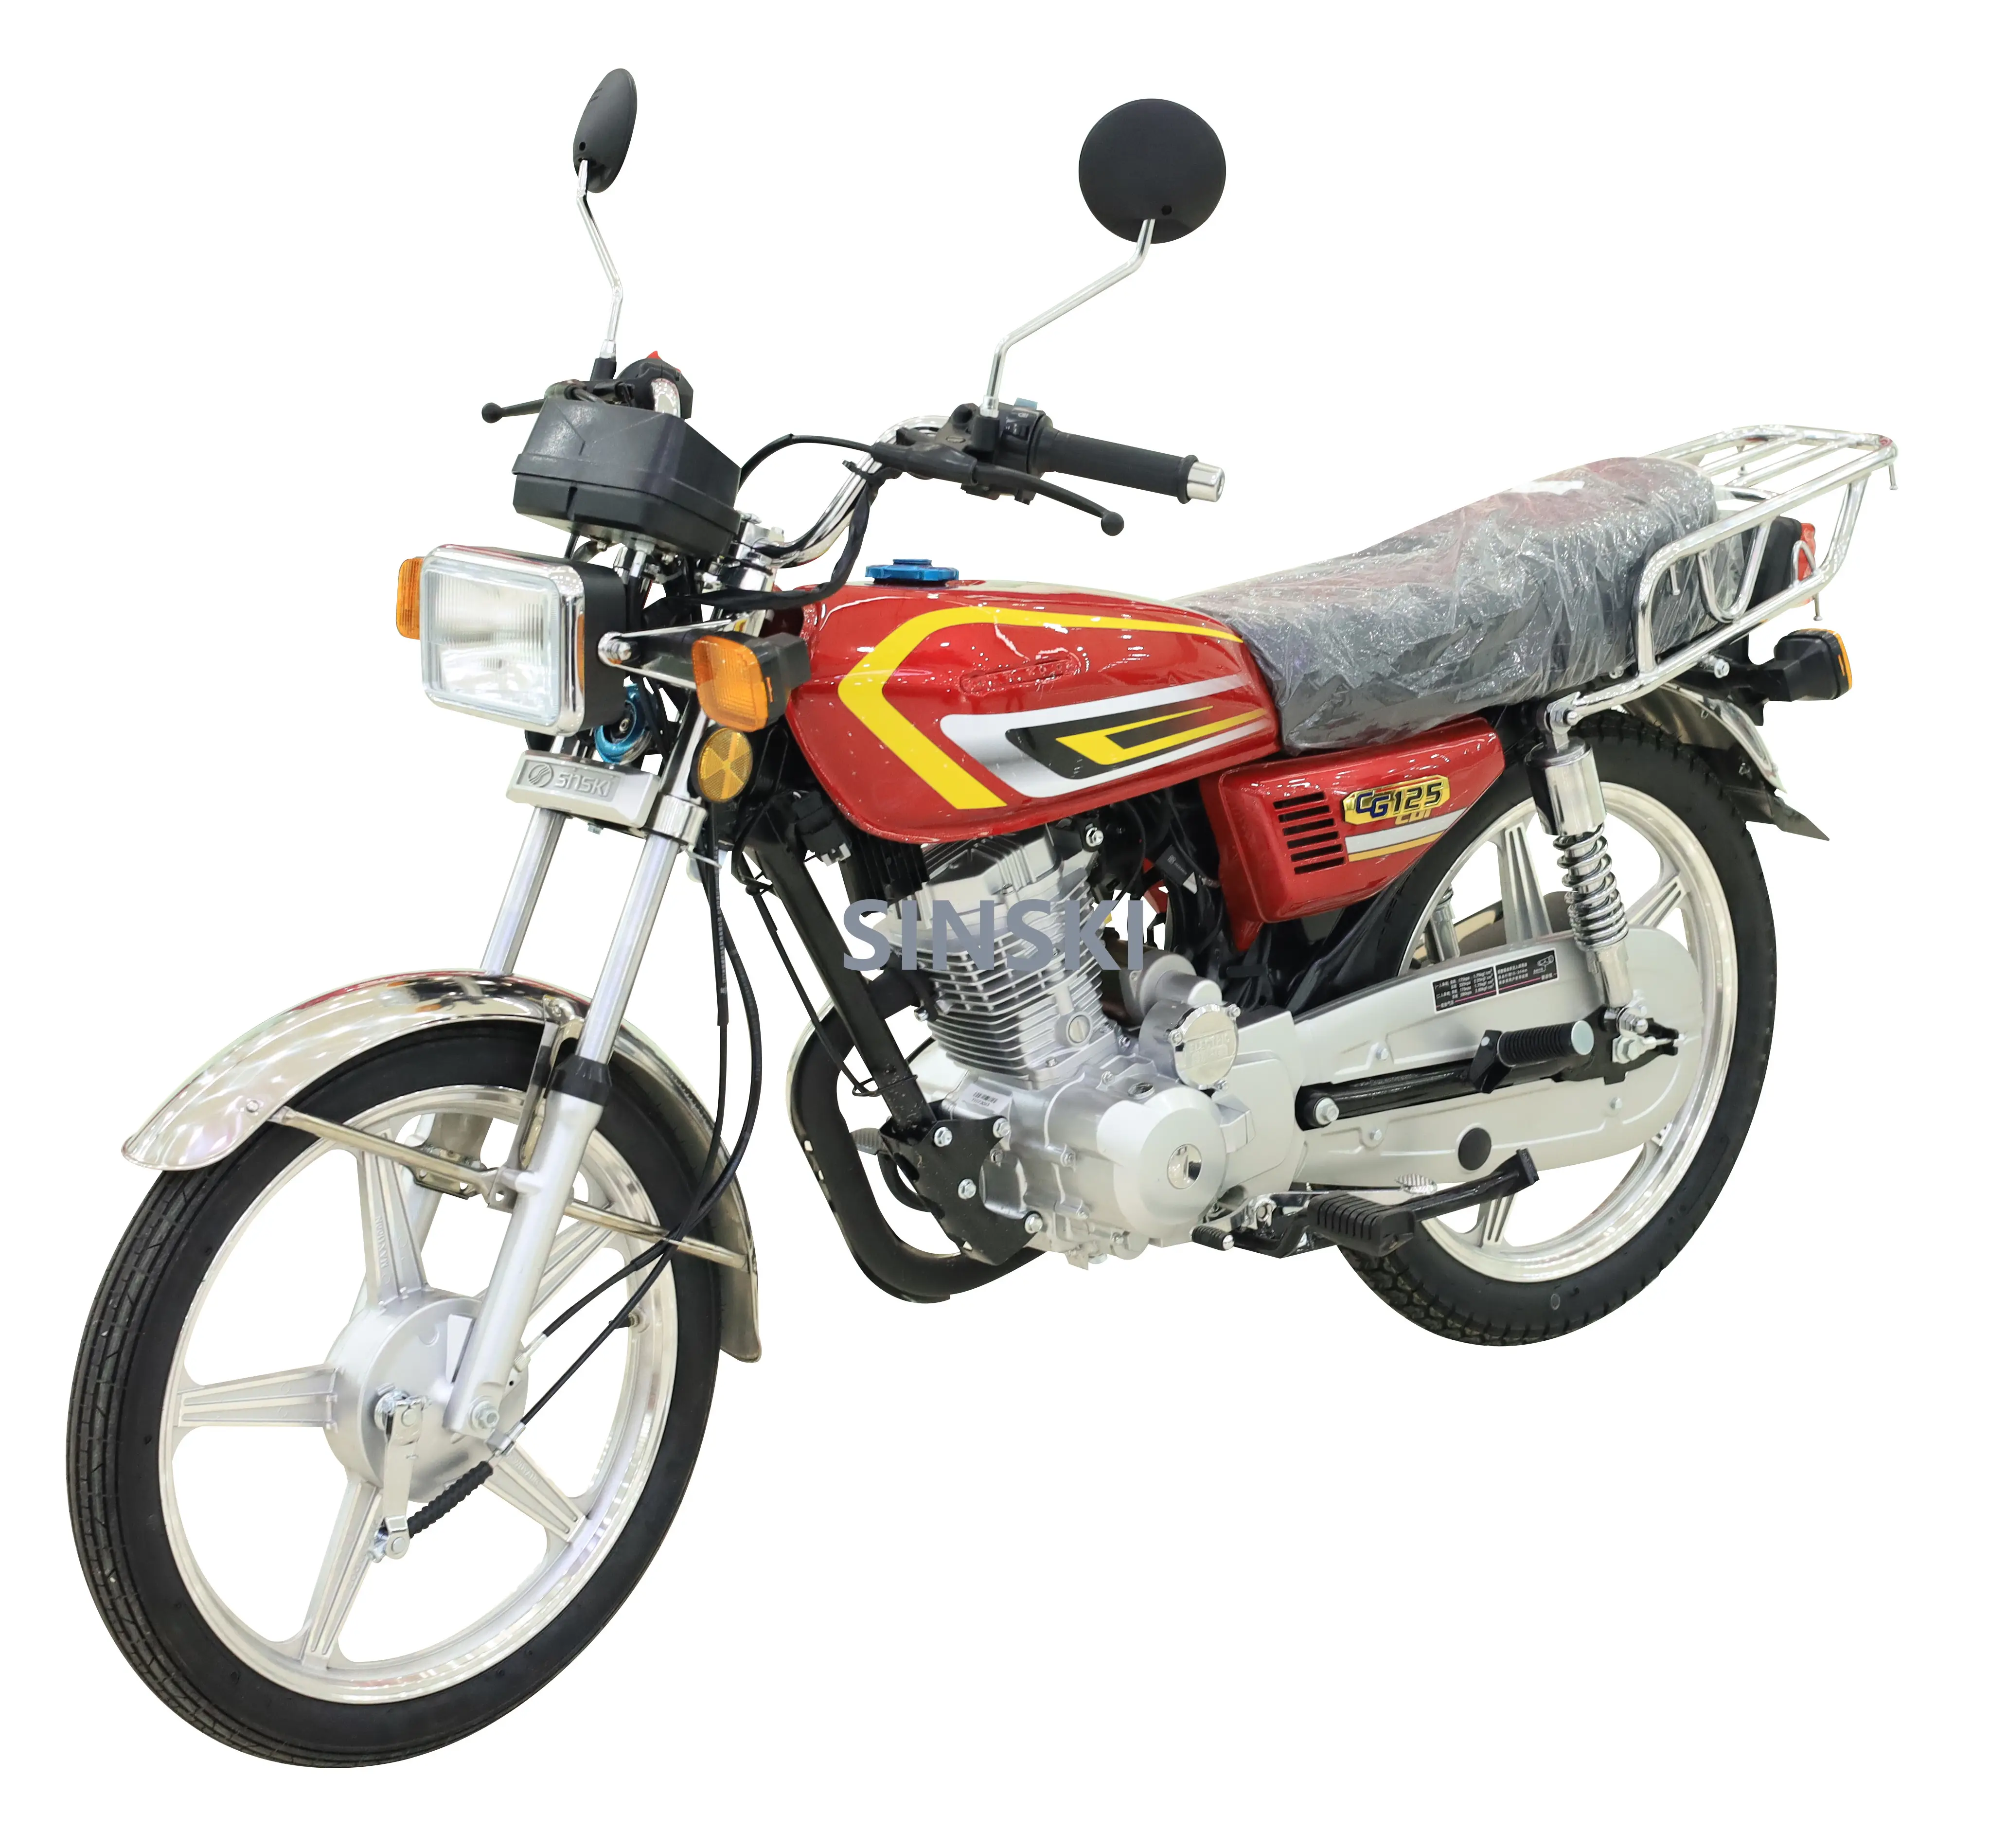 SINSKI motos cg 125cc 150cc Popular Two Wheel Custom Gas Fuel Motorbike For Adult Motorcycle